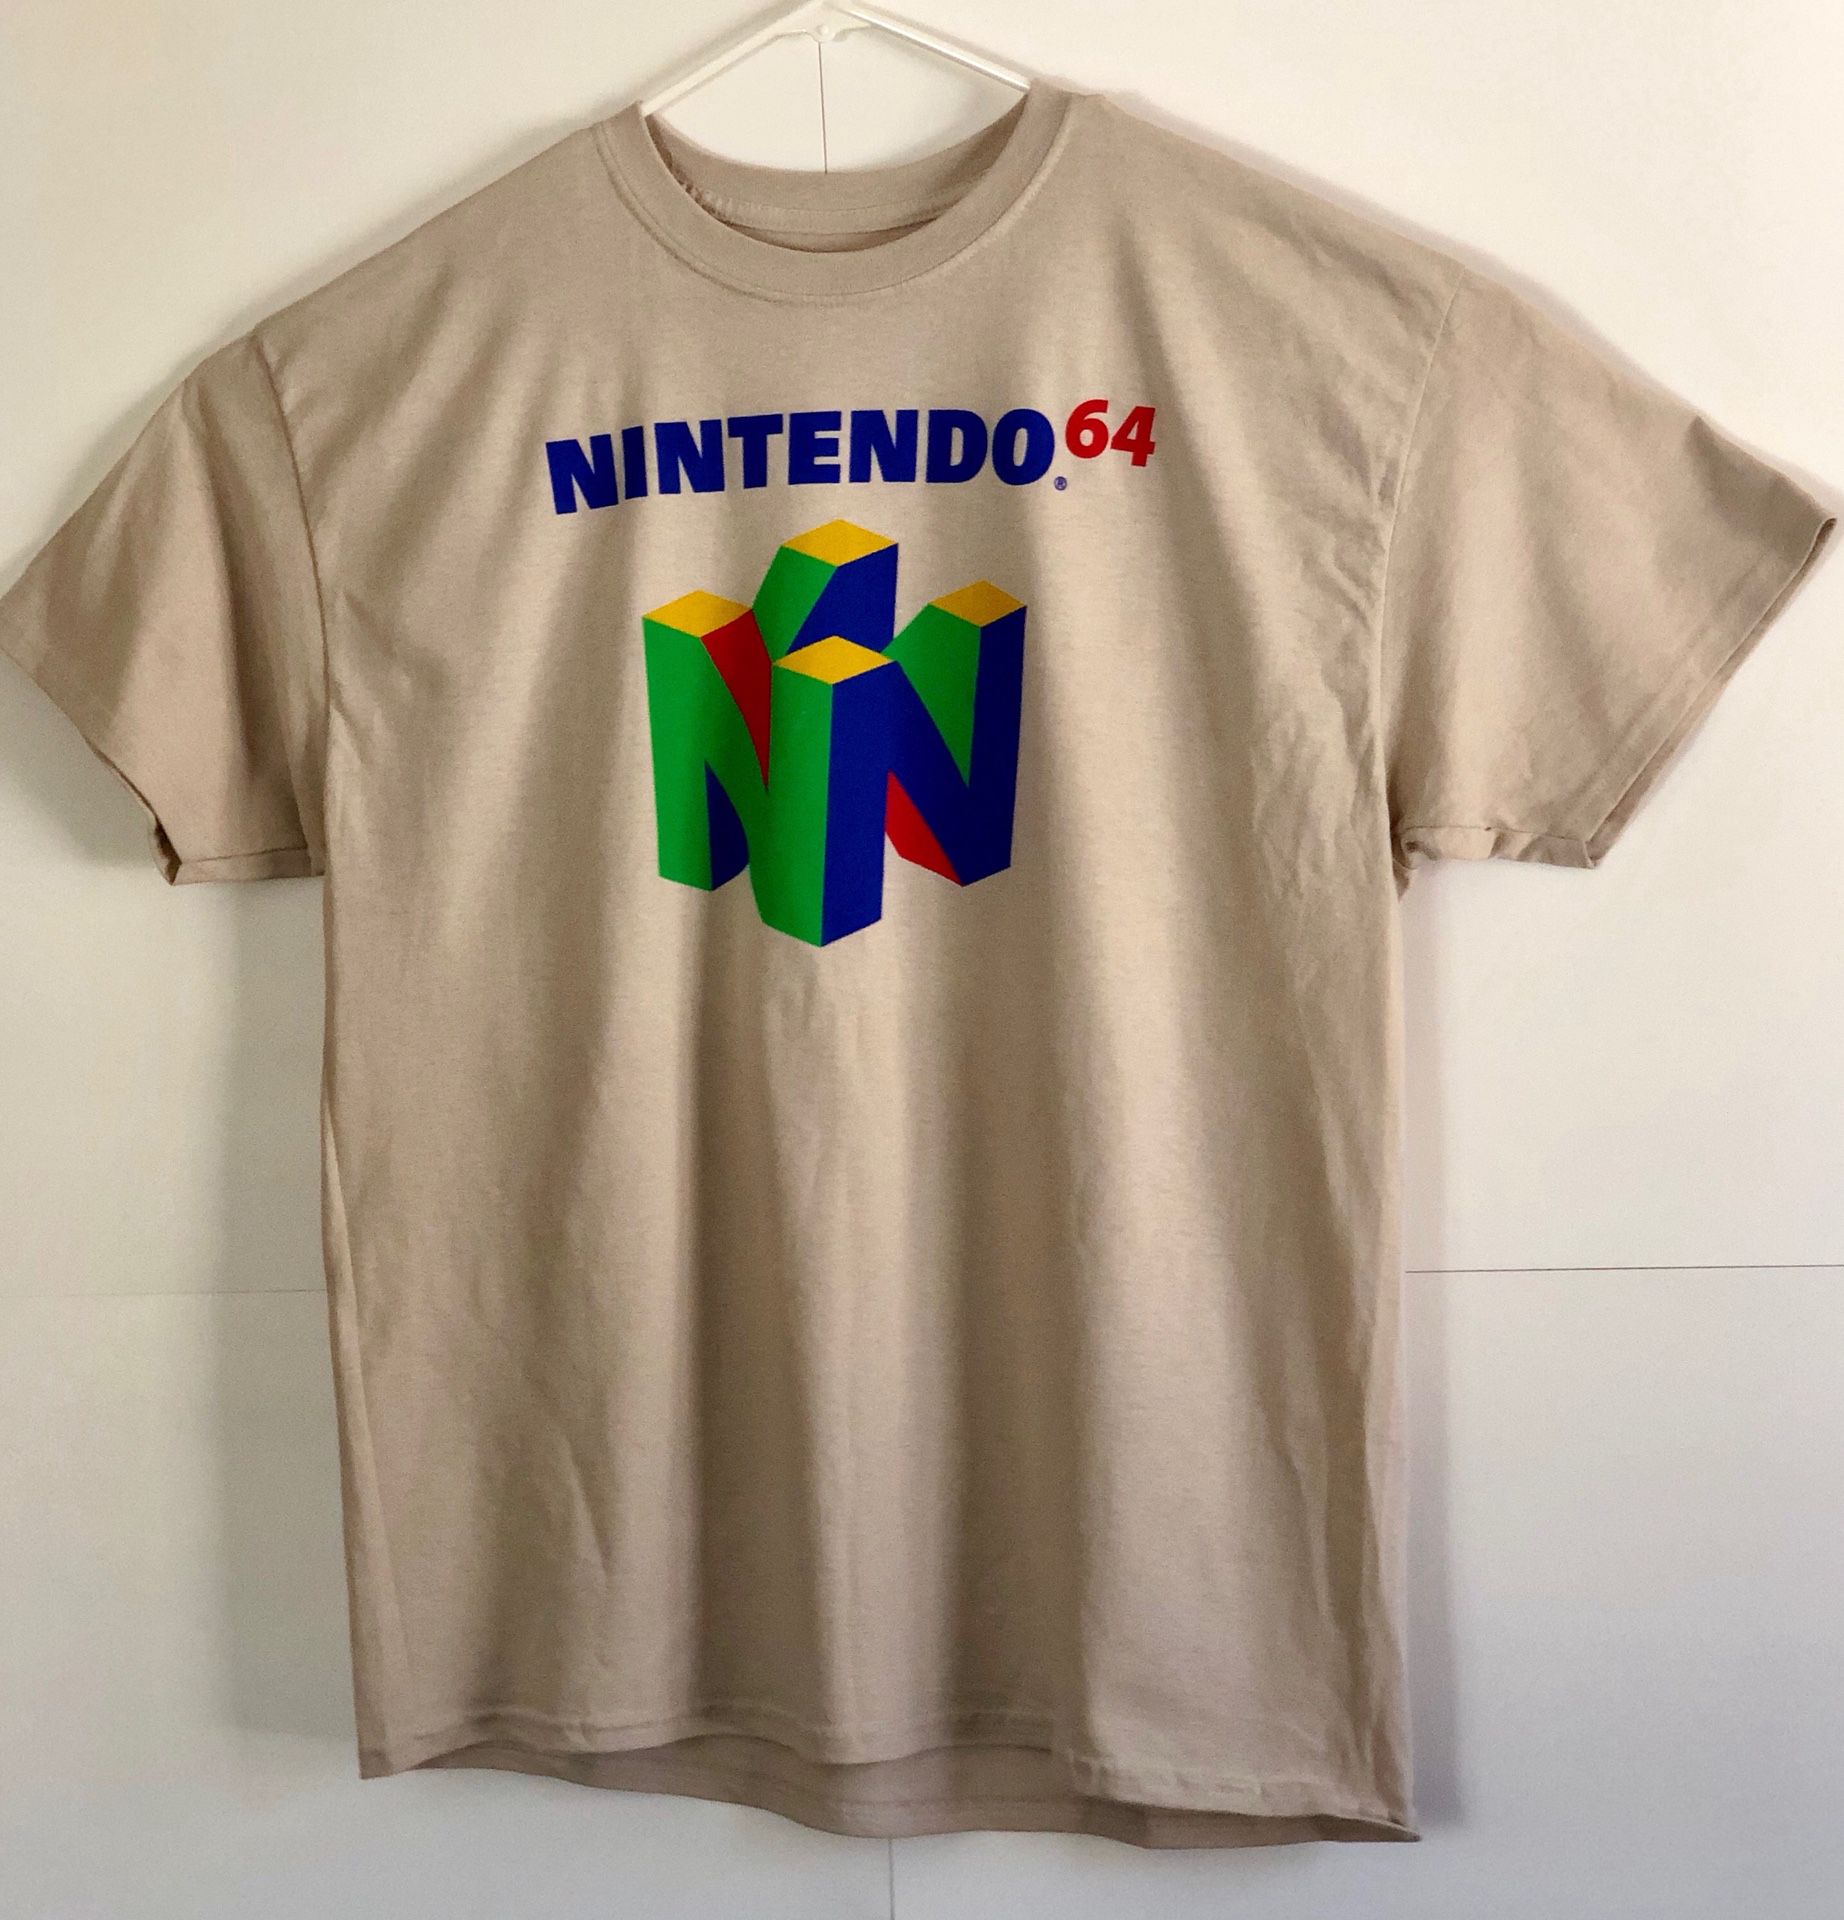 Nintendo 64 Beige Short Sleeve T shirt Size XL